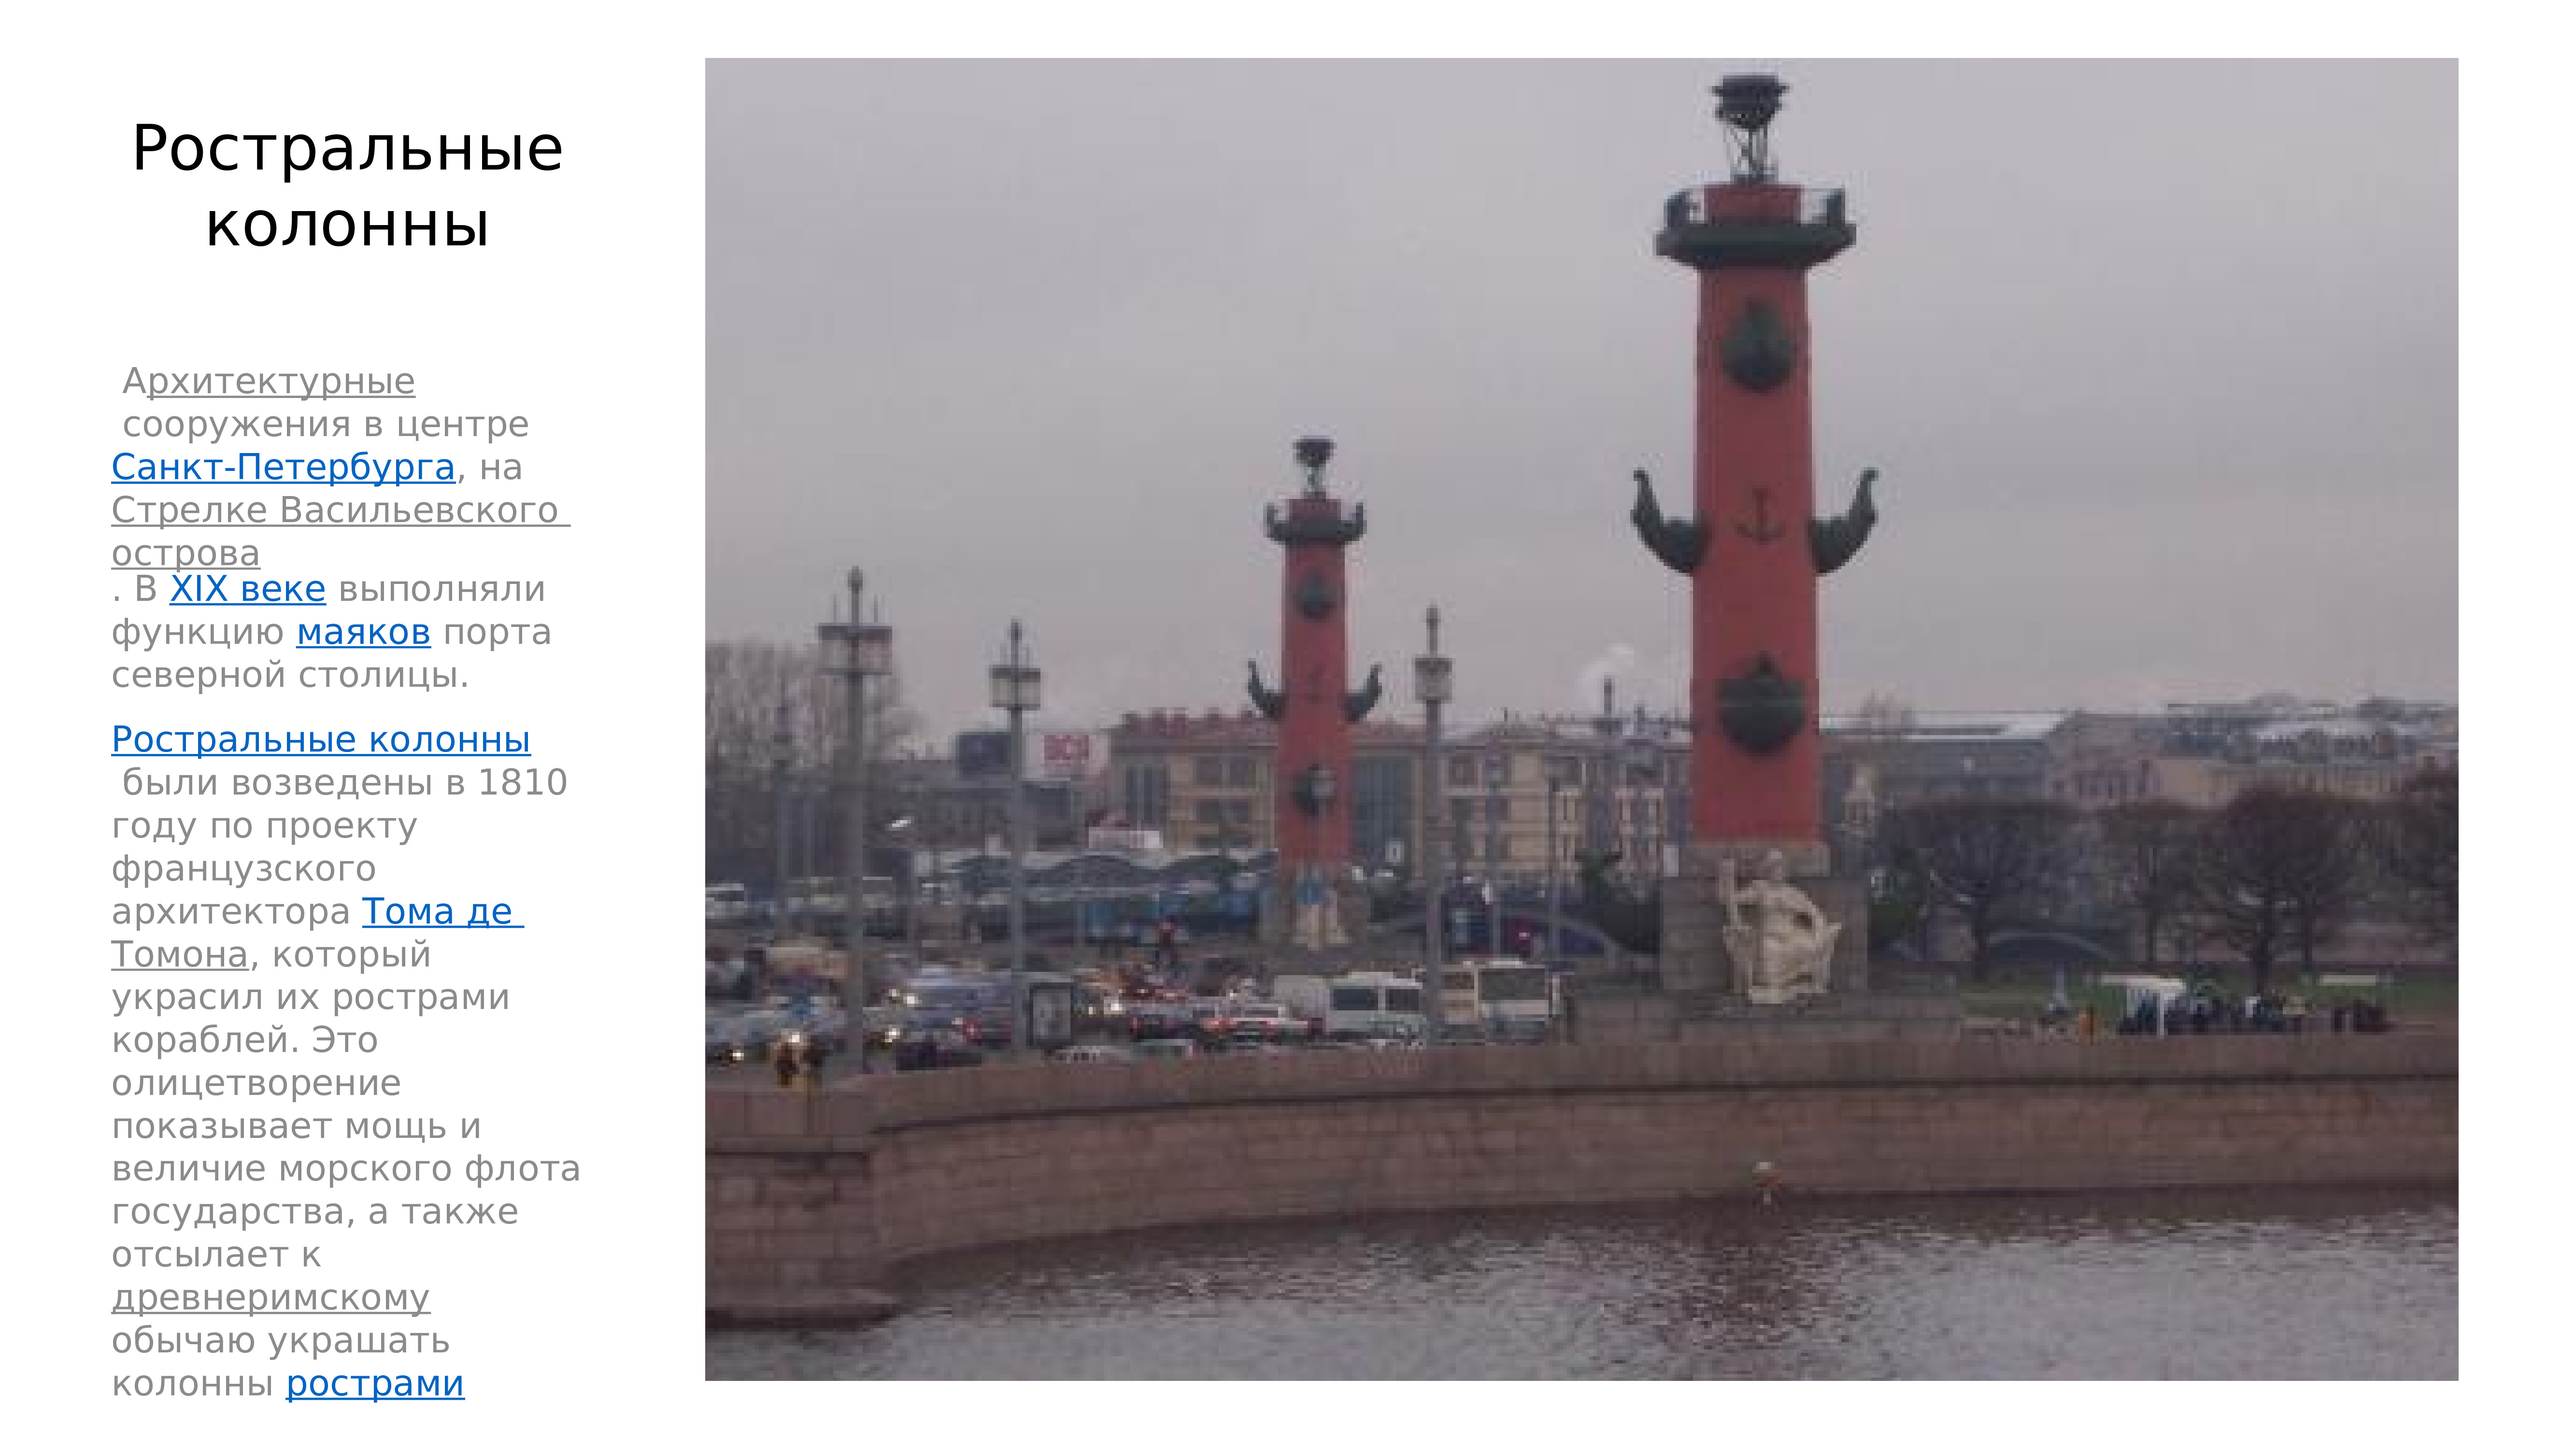 Достопримечательности Санкт-Петербурга Ростральные колонны